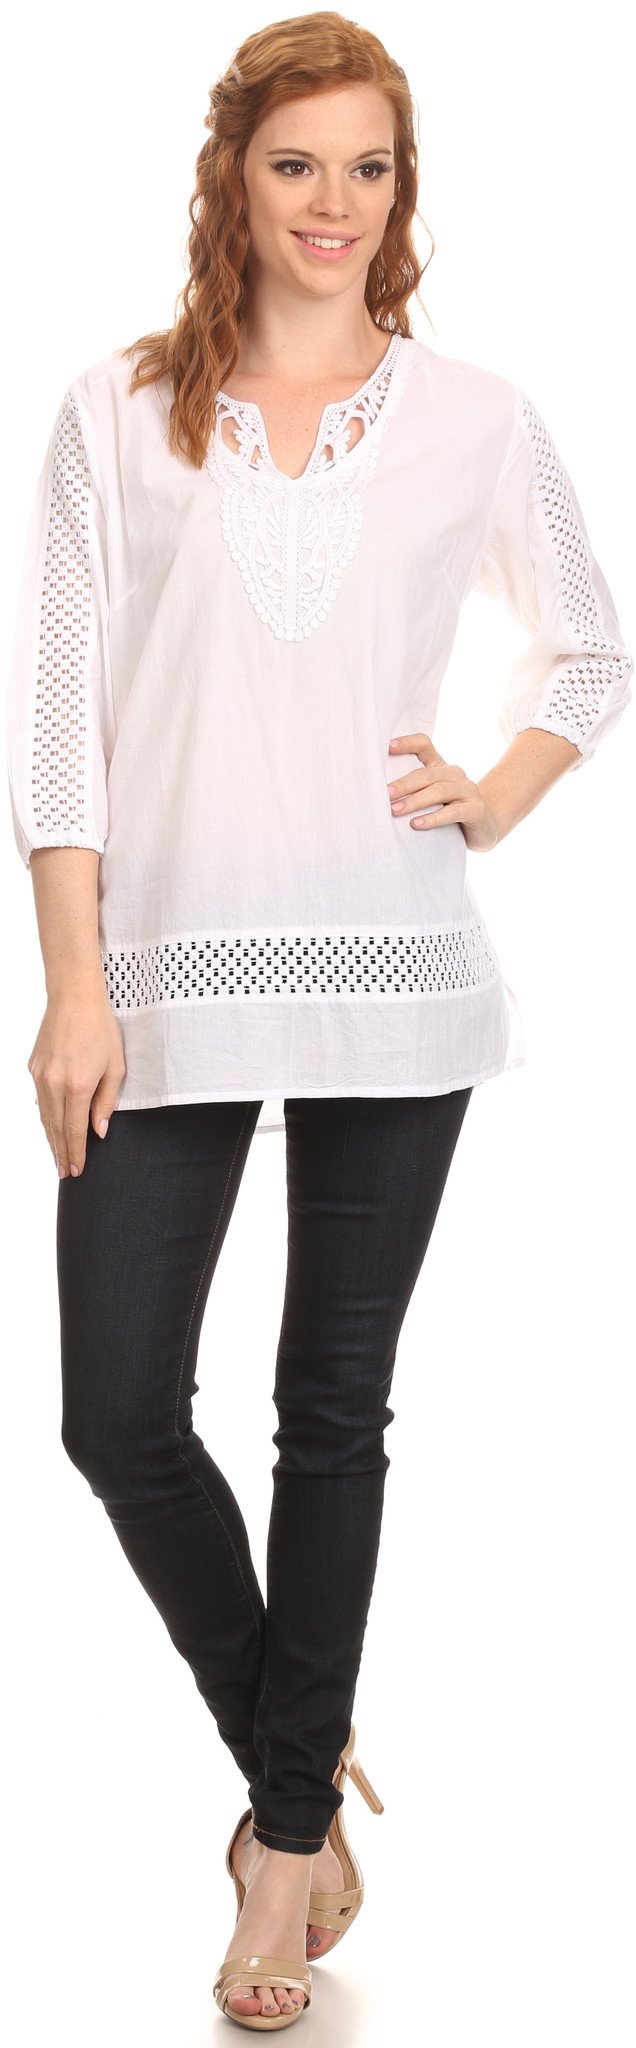 Sakkas Velga Embroidered 3/4 Length Sleeves Crochet V Neck Tunic Blouse Shirt Top